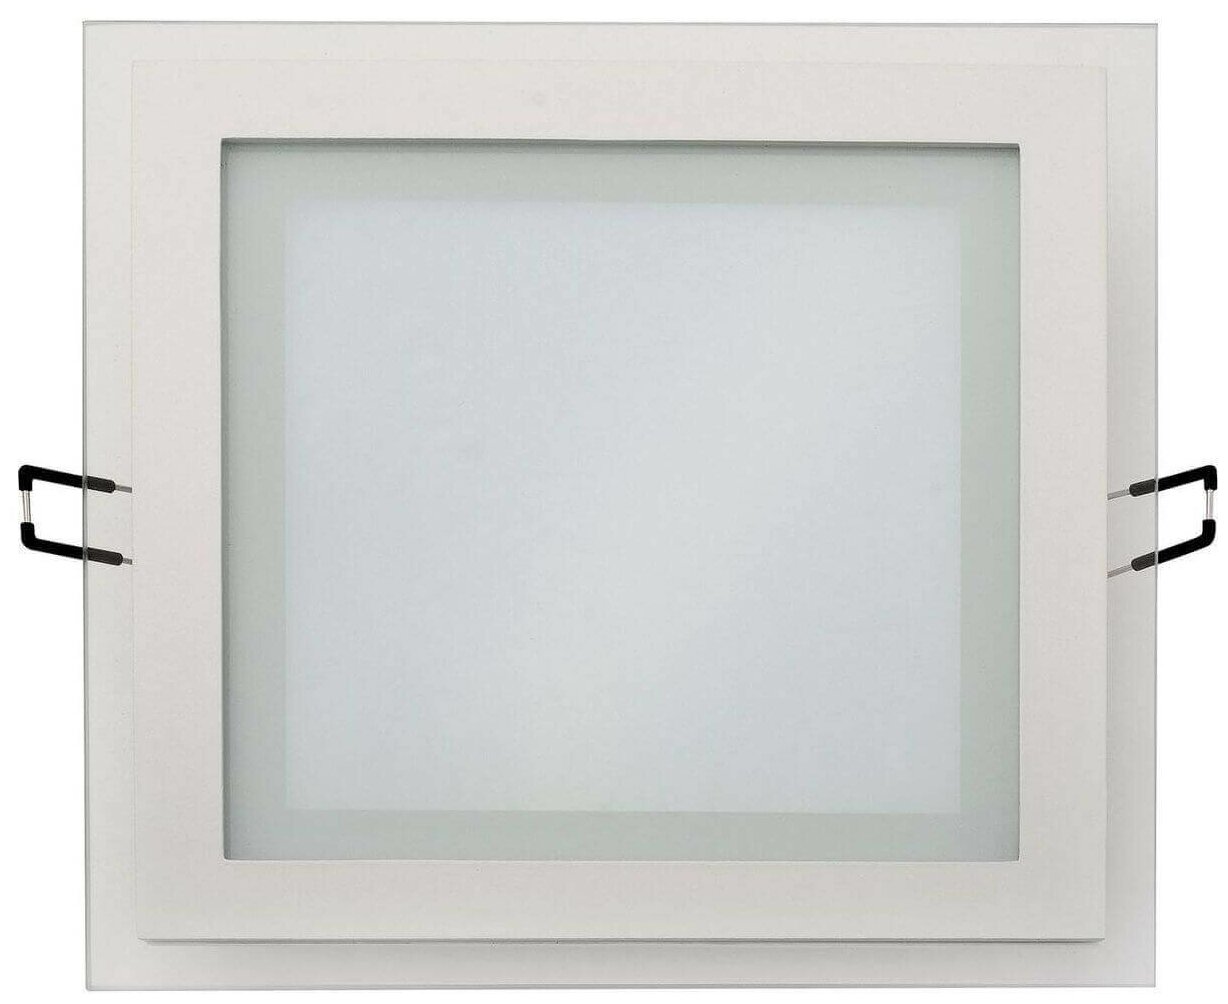 Horoz светодиодный светильник встраиваемый потолочный направленного света дневной белый свет 15W, 4200K, 165-260V MARIA-15 016-015-0015